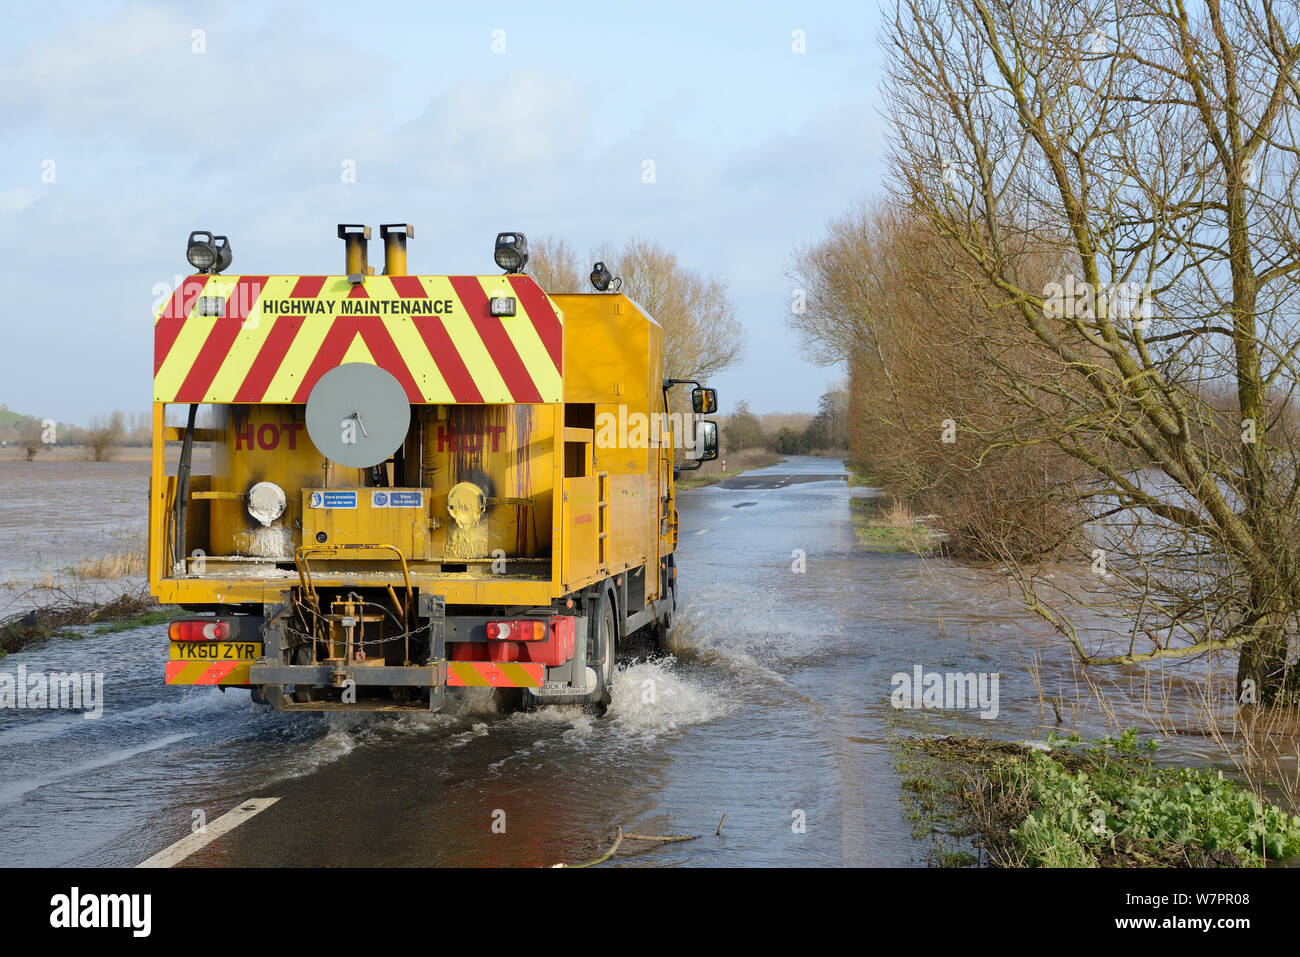 Véhicule d'entretien des routes en passant par les inondations sur gravement inondé A361 entre l'Est et l'ensemble Burrowbridge Lyng Sel inférieur Moor après des semaines de forte pluie, les niveaux de Somerset, au Royaume-Uni, en janvier 2013. Banque D'Images